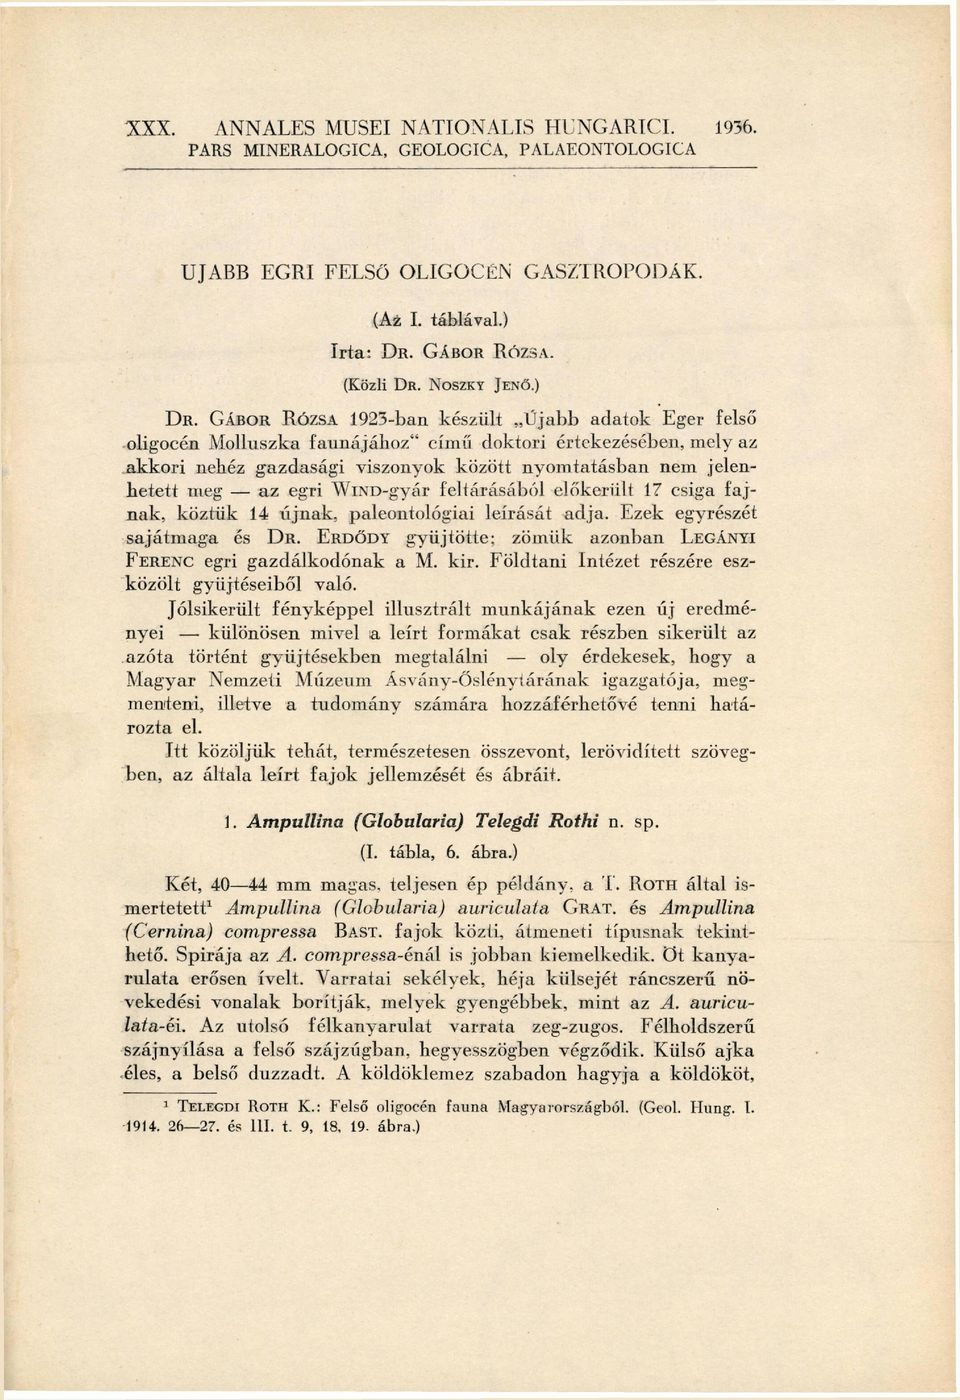 GÁBOR RÓZSA 1923-ban készült Újabb adatok Eger felső oligocén Molluszka faunájához" című doktori értekezésében, mely az akkori nehéz gazdasági viszonyok között nyomtatásban nem jelen hetett meg az